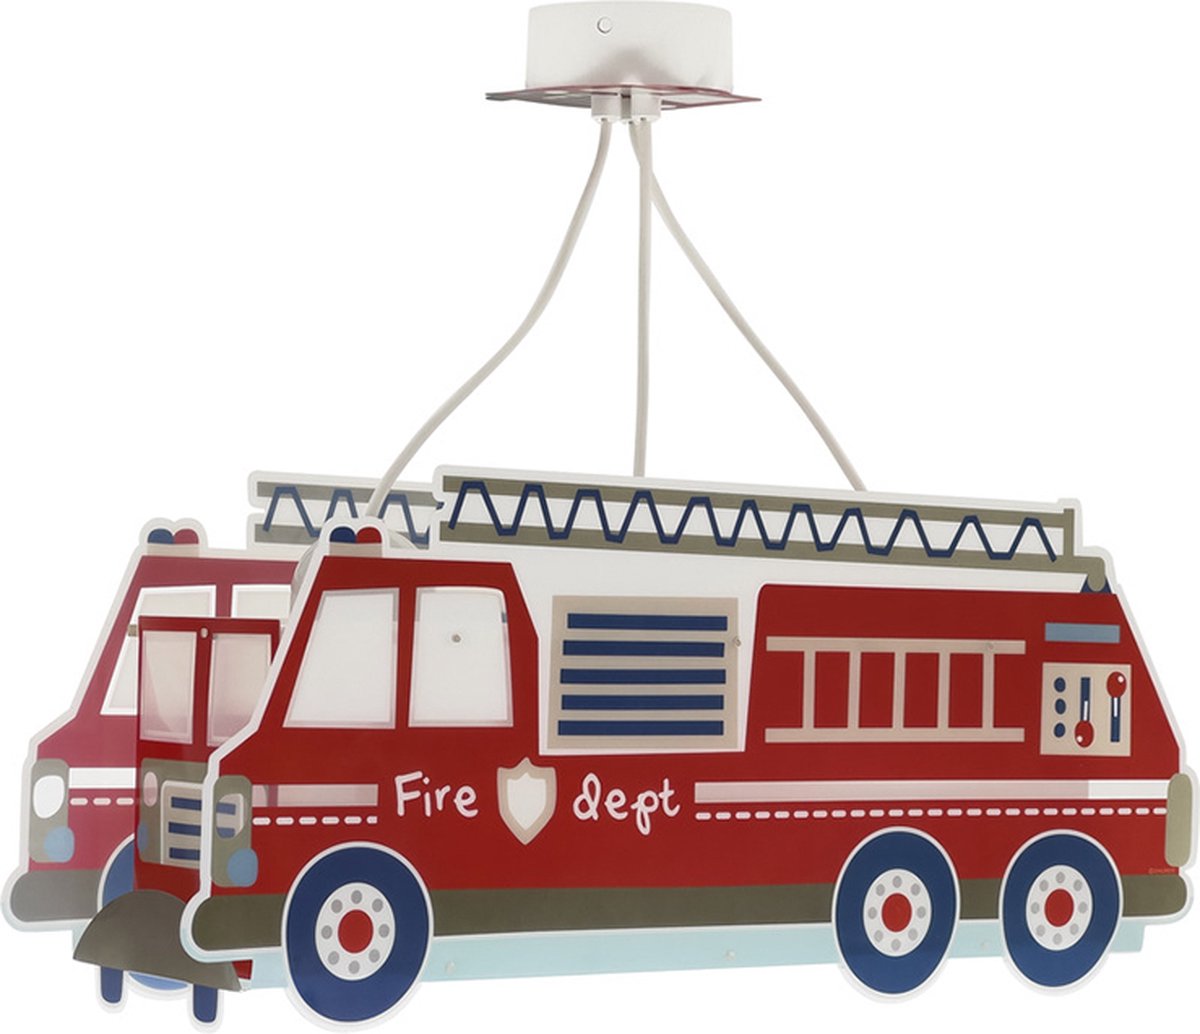 Dalber Fire Truck - Kinderkamer hanglamp - Rood